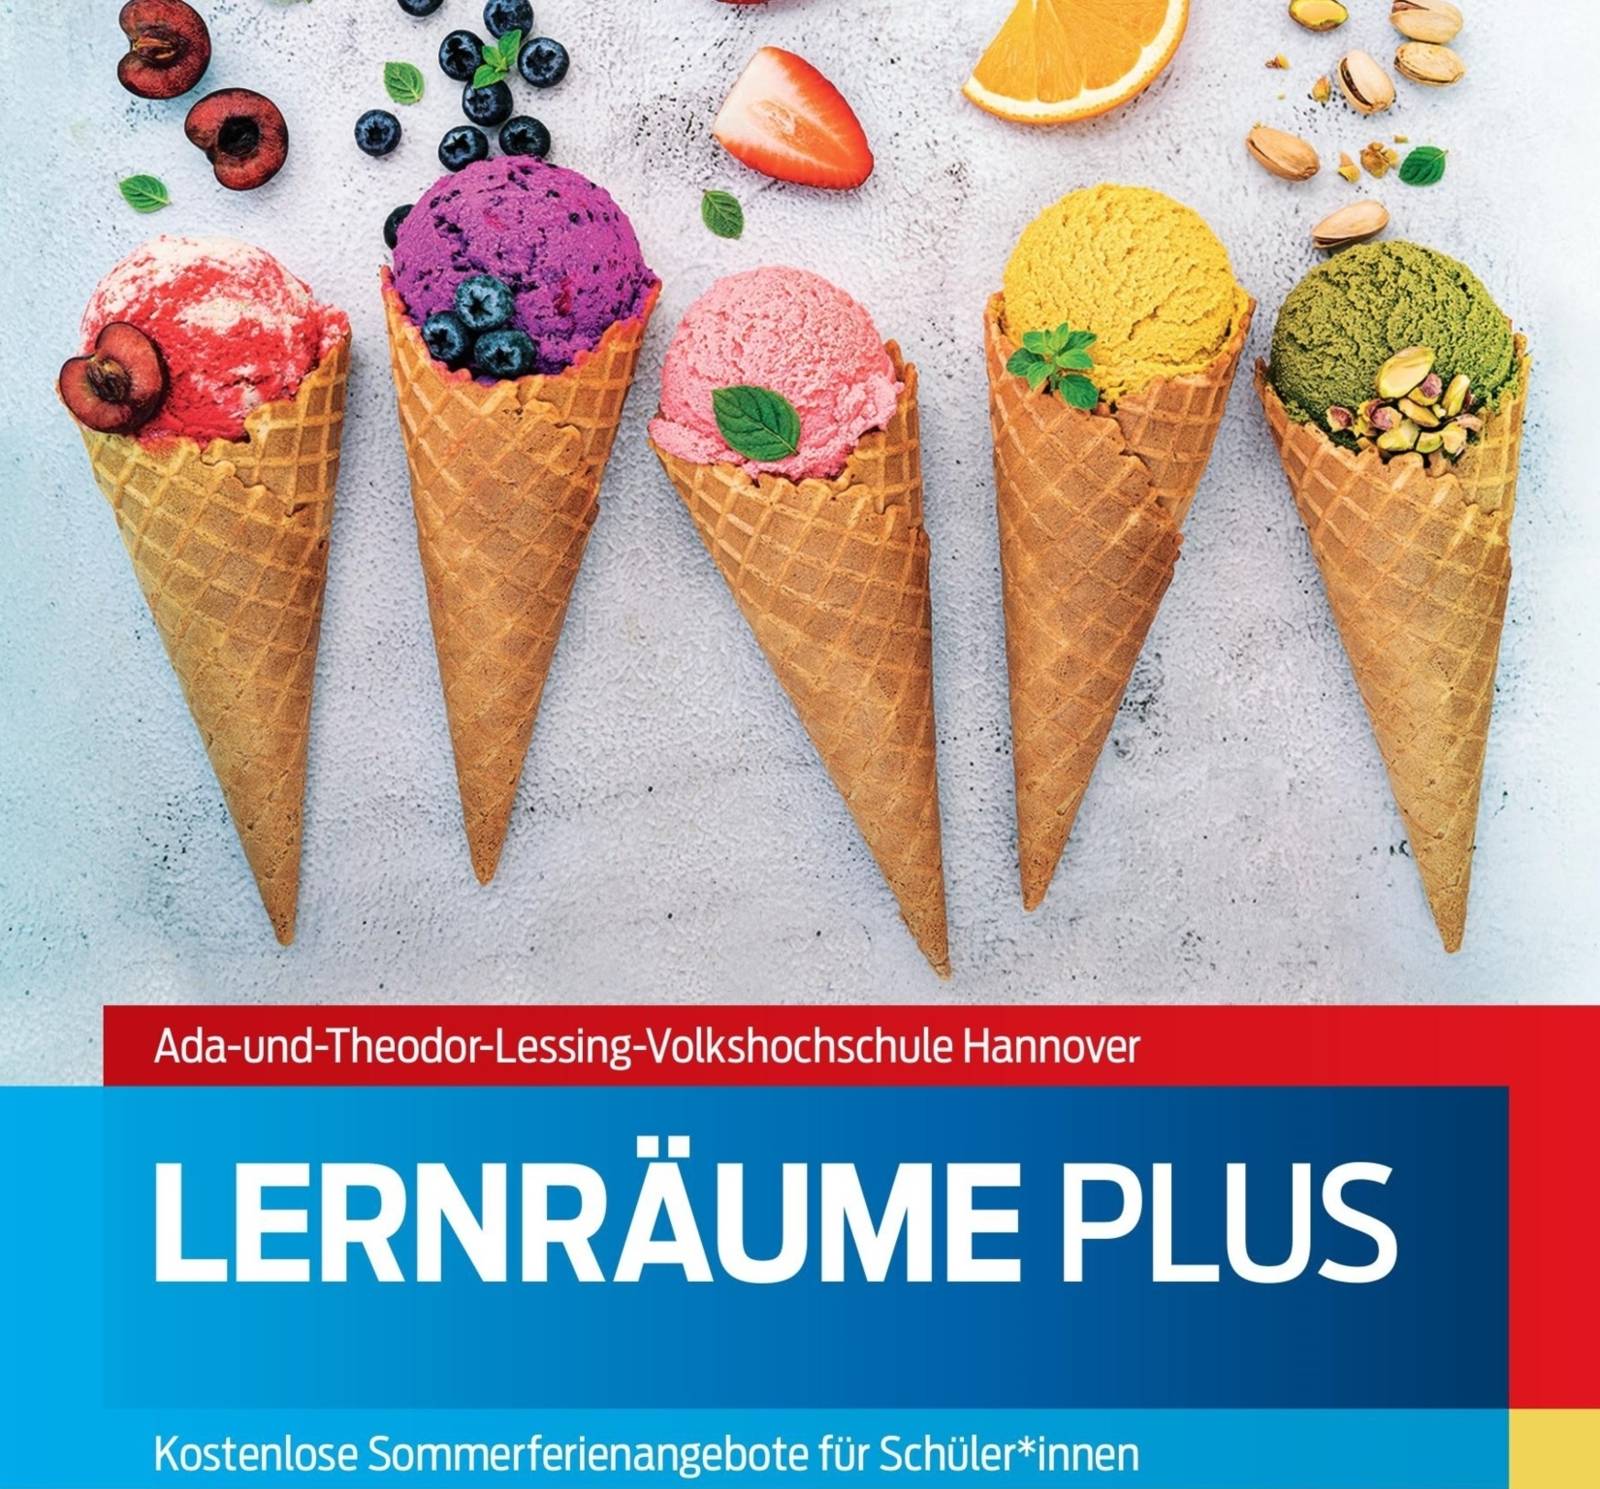 Plakat Ada-und Theodor Lessing VHS: Mehrere Eiswaffeln mit verschiedenen Eiskugeln und Früchten sind zu sehen. Text LernräumePlus . Kostenloses Sommerferienangebot.